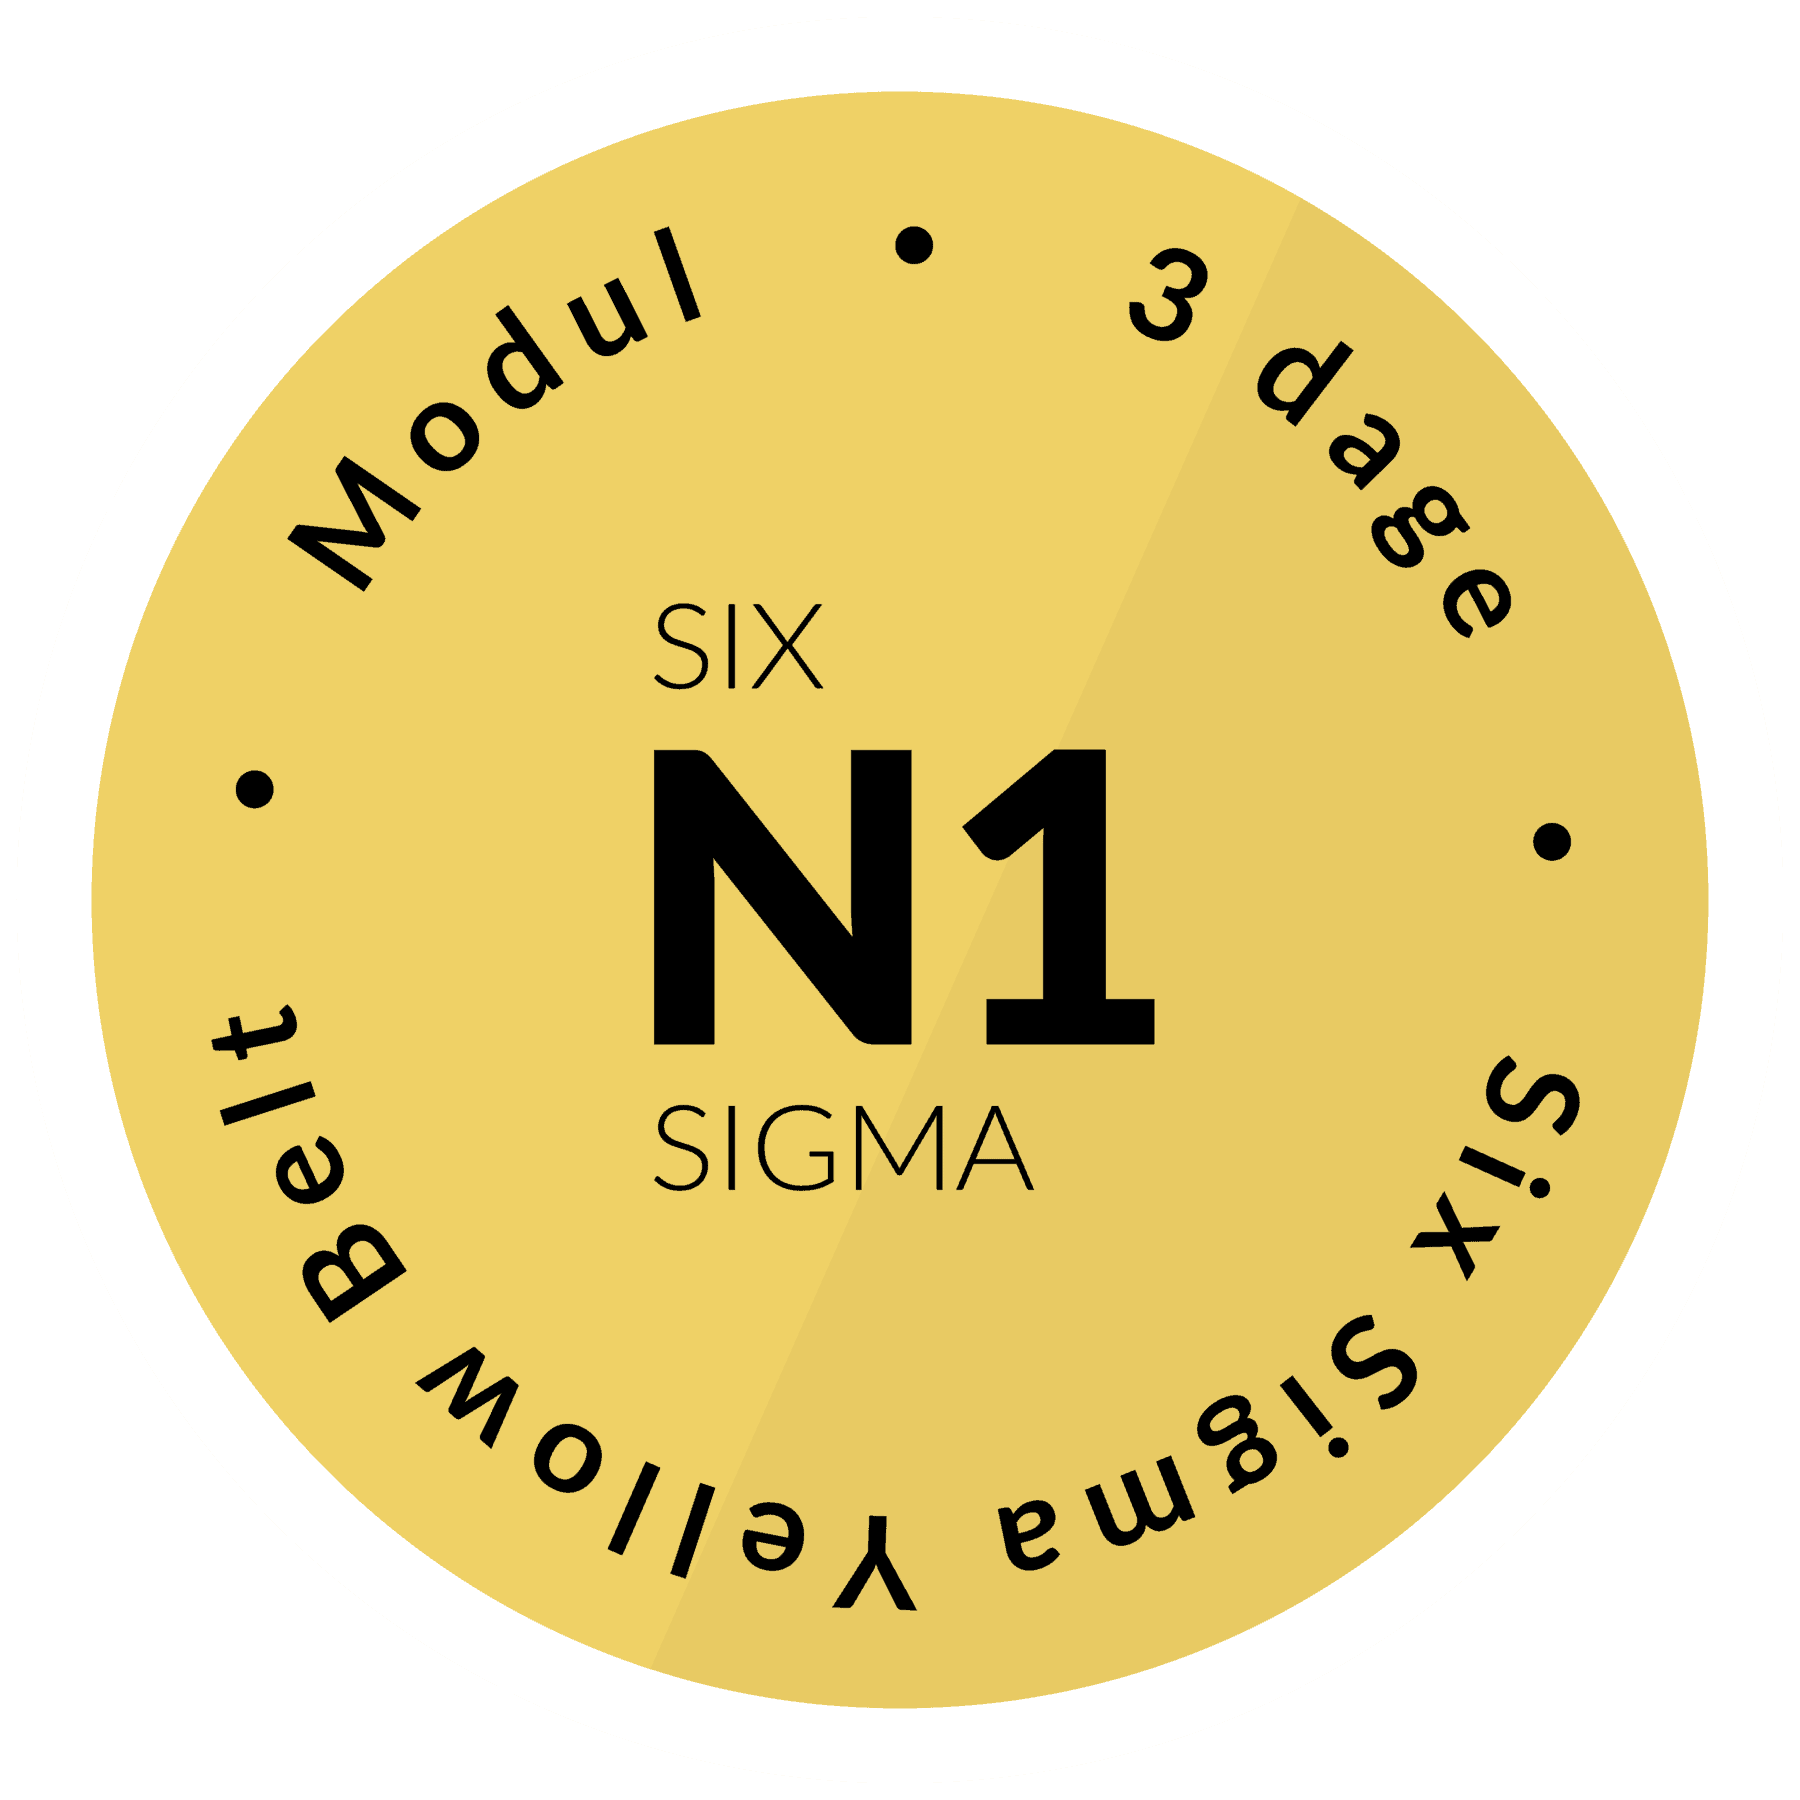 Modul - Six sigma Yellow Belt